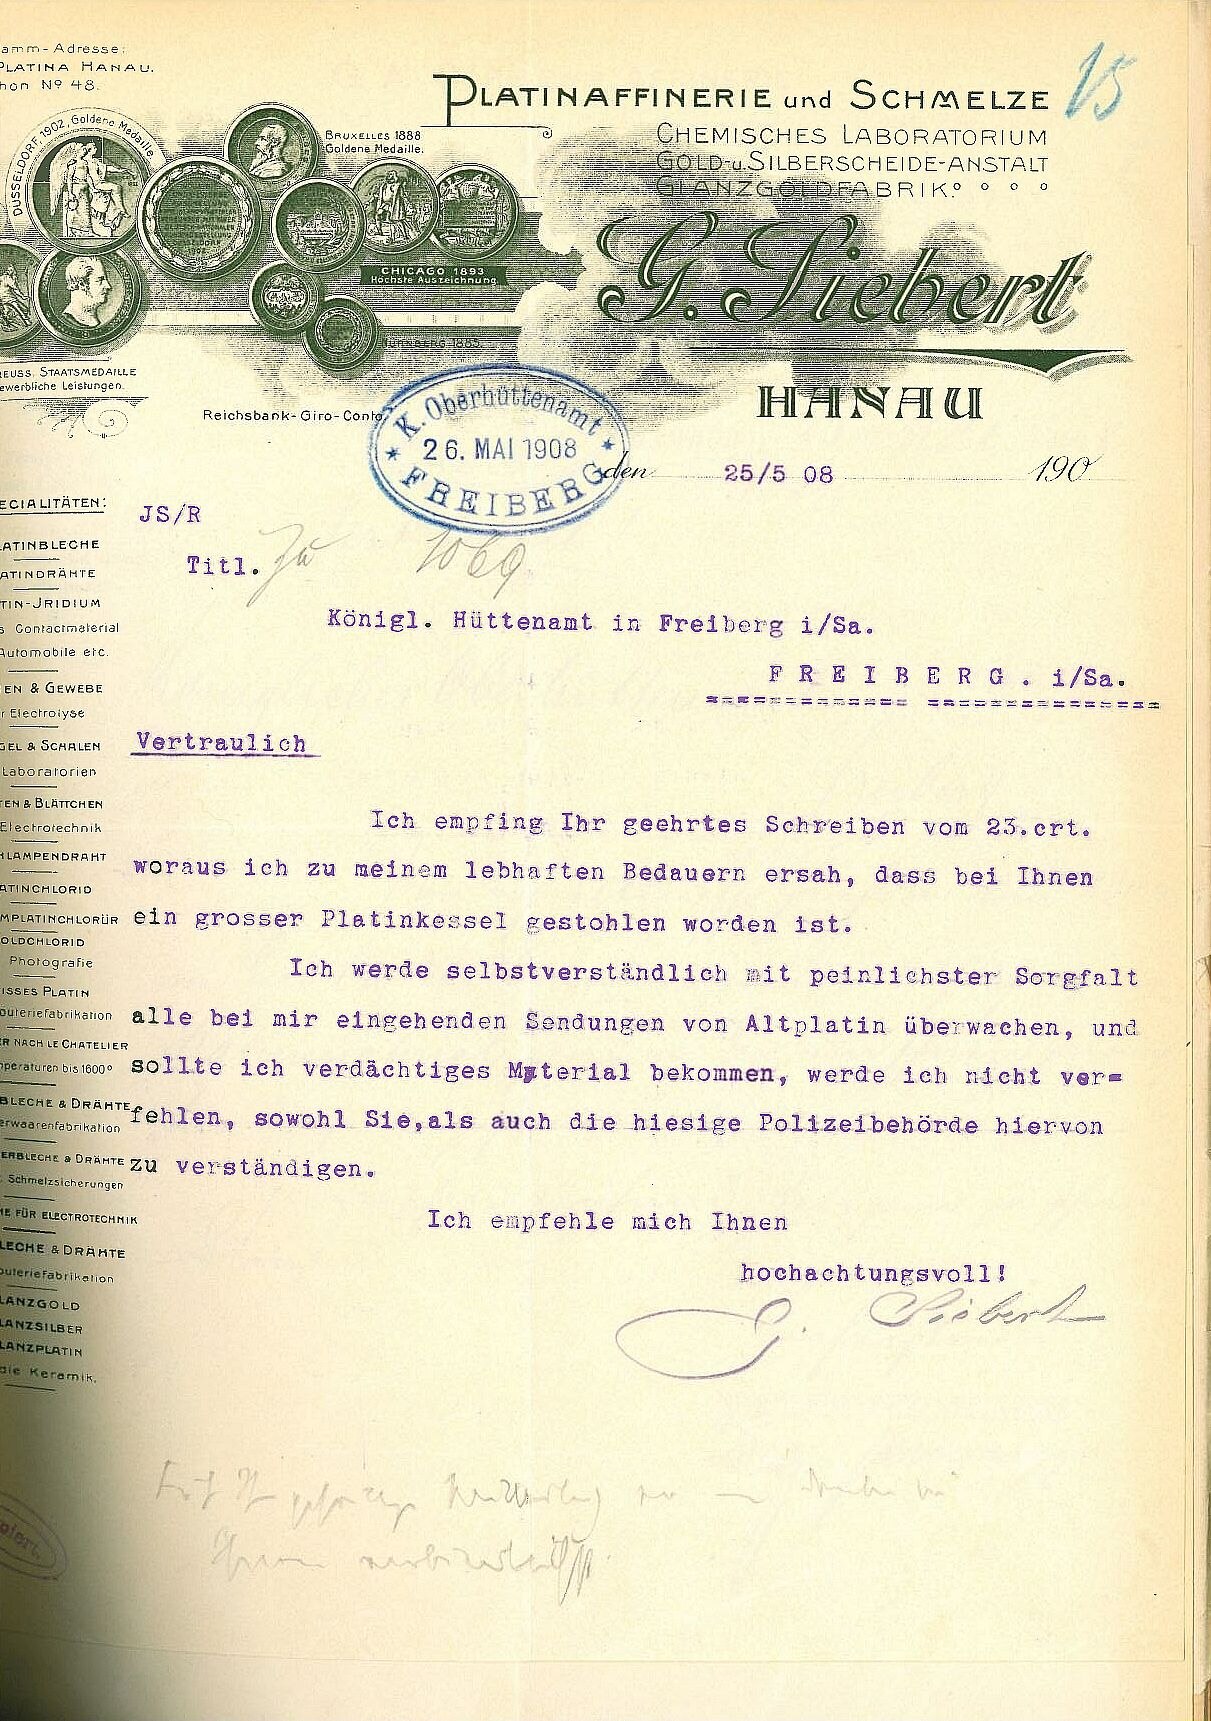 Antwortschreiben der Platinaffinerie und Schmelze Hanau vom 25. Mai 1908 auf ein Rundschreiben des Oberhüttenamtes Freiberg nach dem Diebstahl